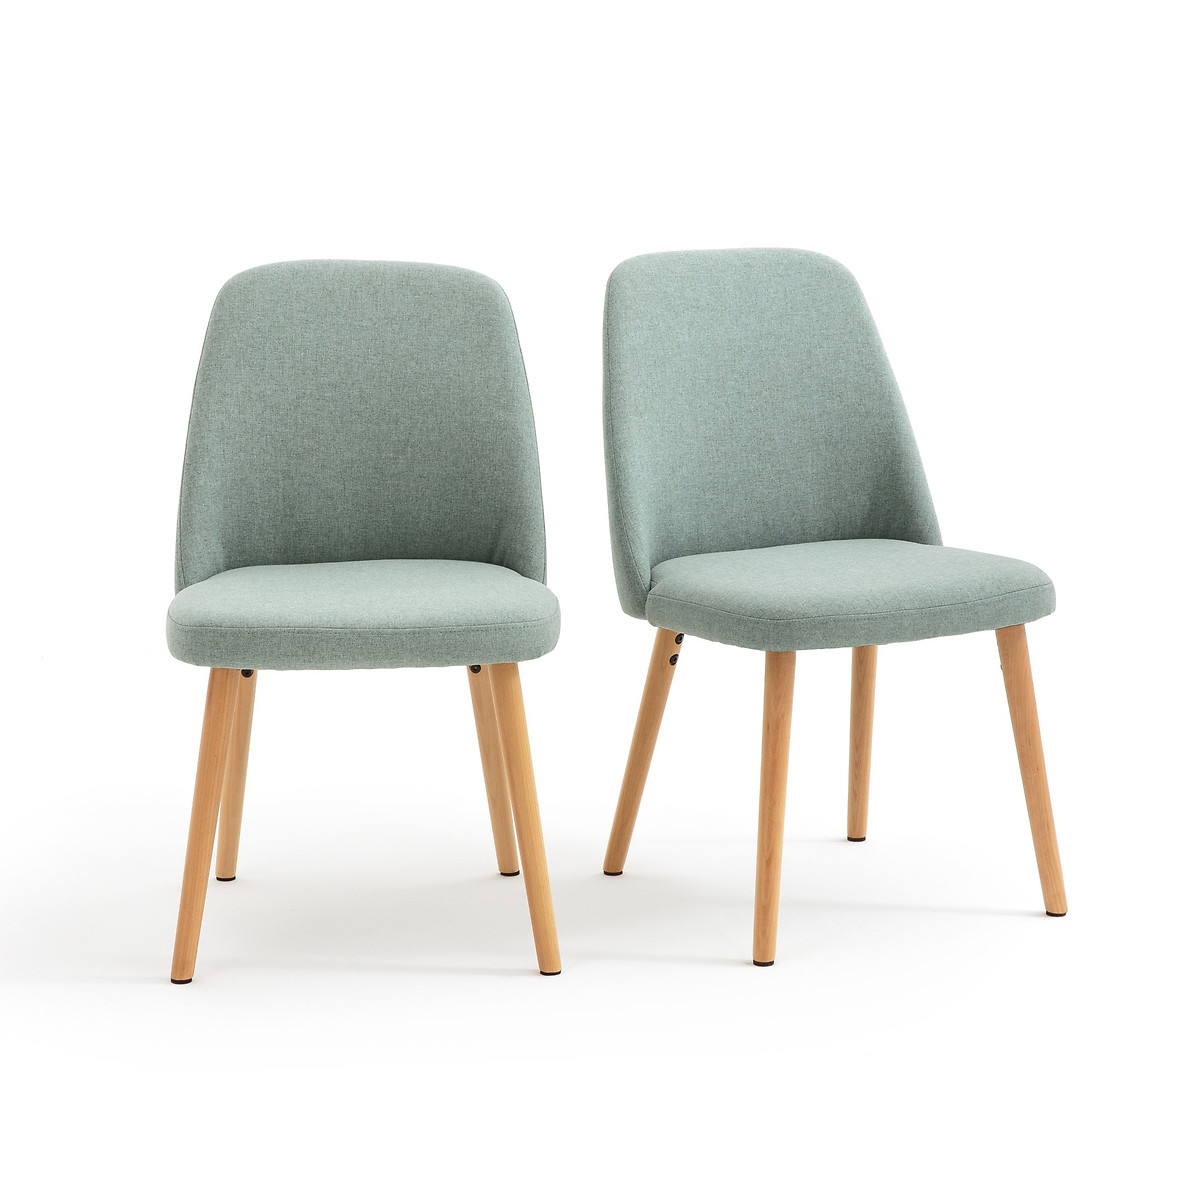 Комплект из 2 стульев, Jimi La Redoute единый размер зеленый комплект из 2 стульев jimi la redoute единый размер зеленый